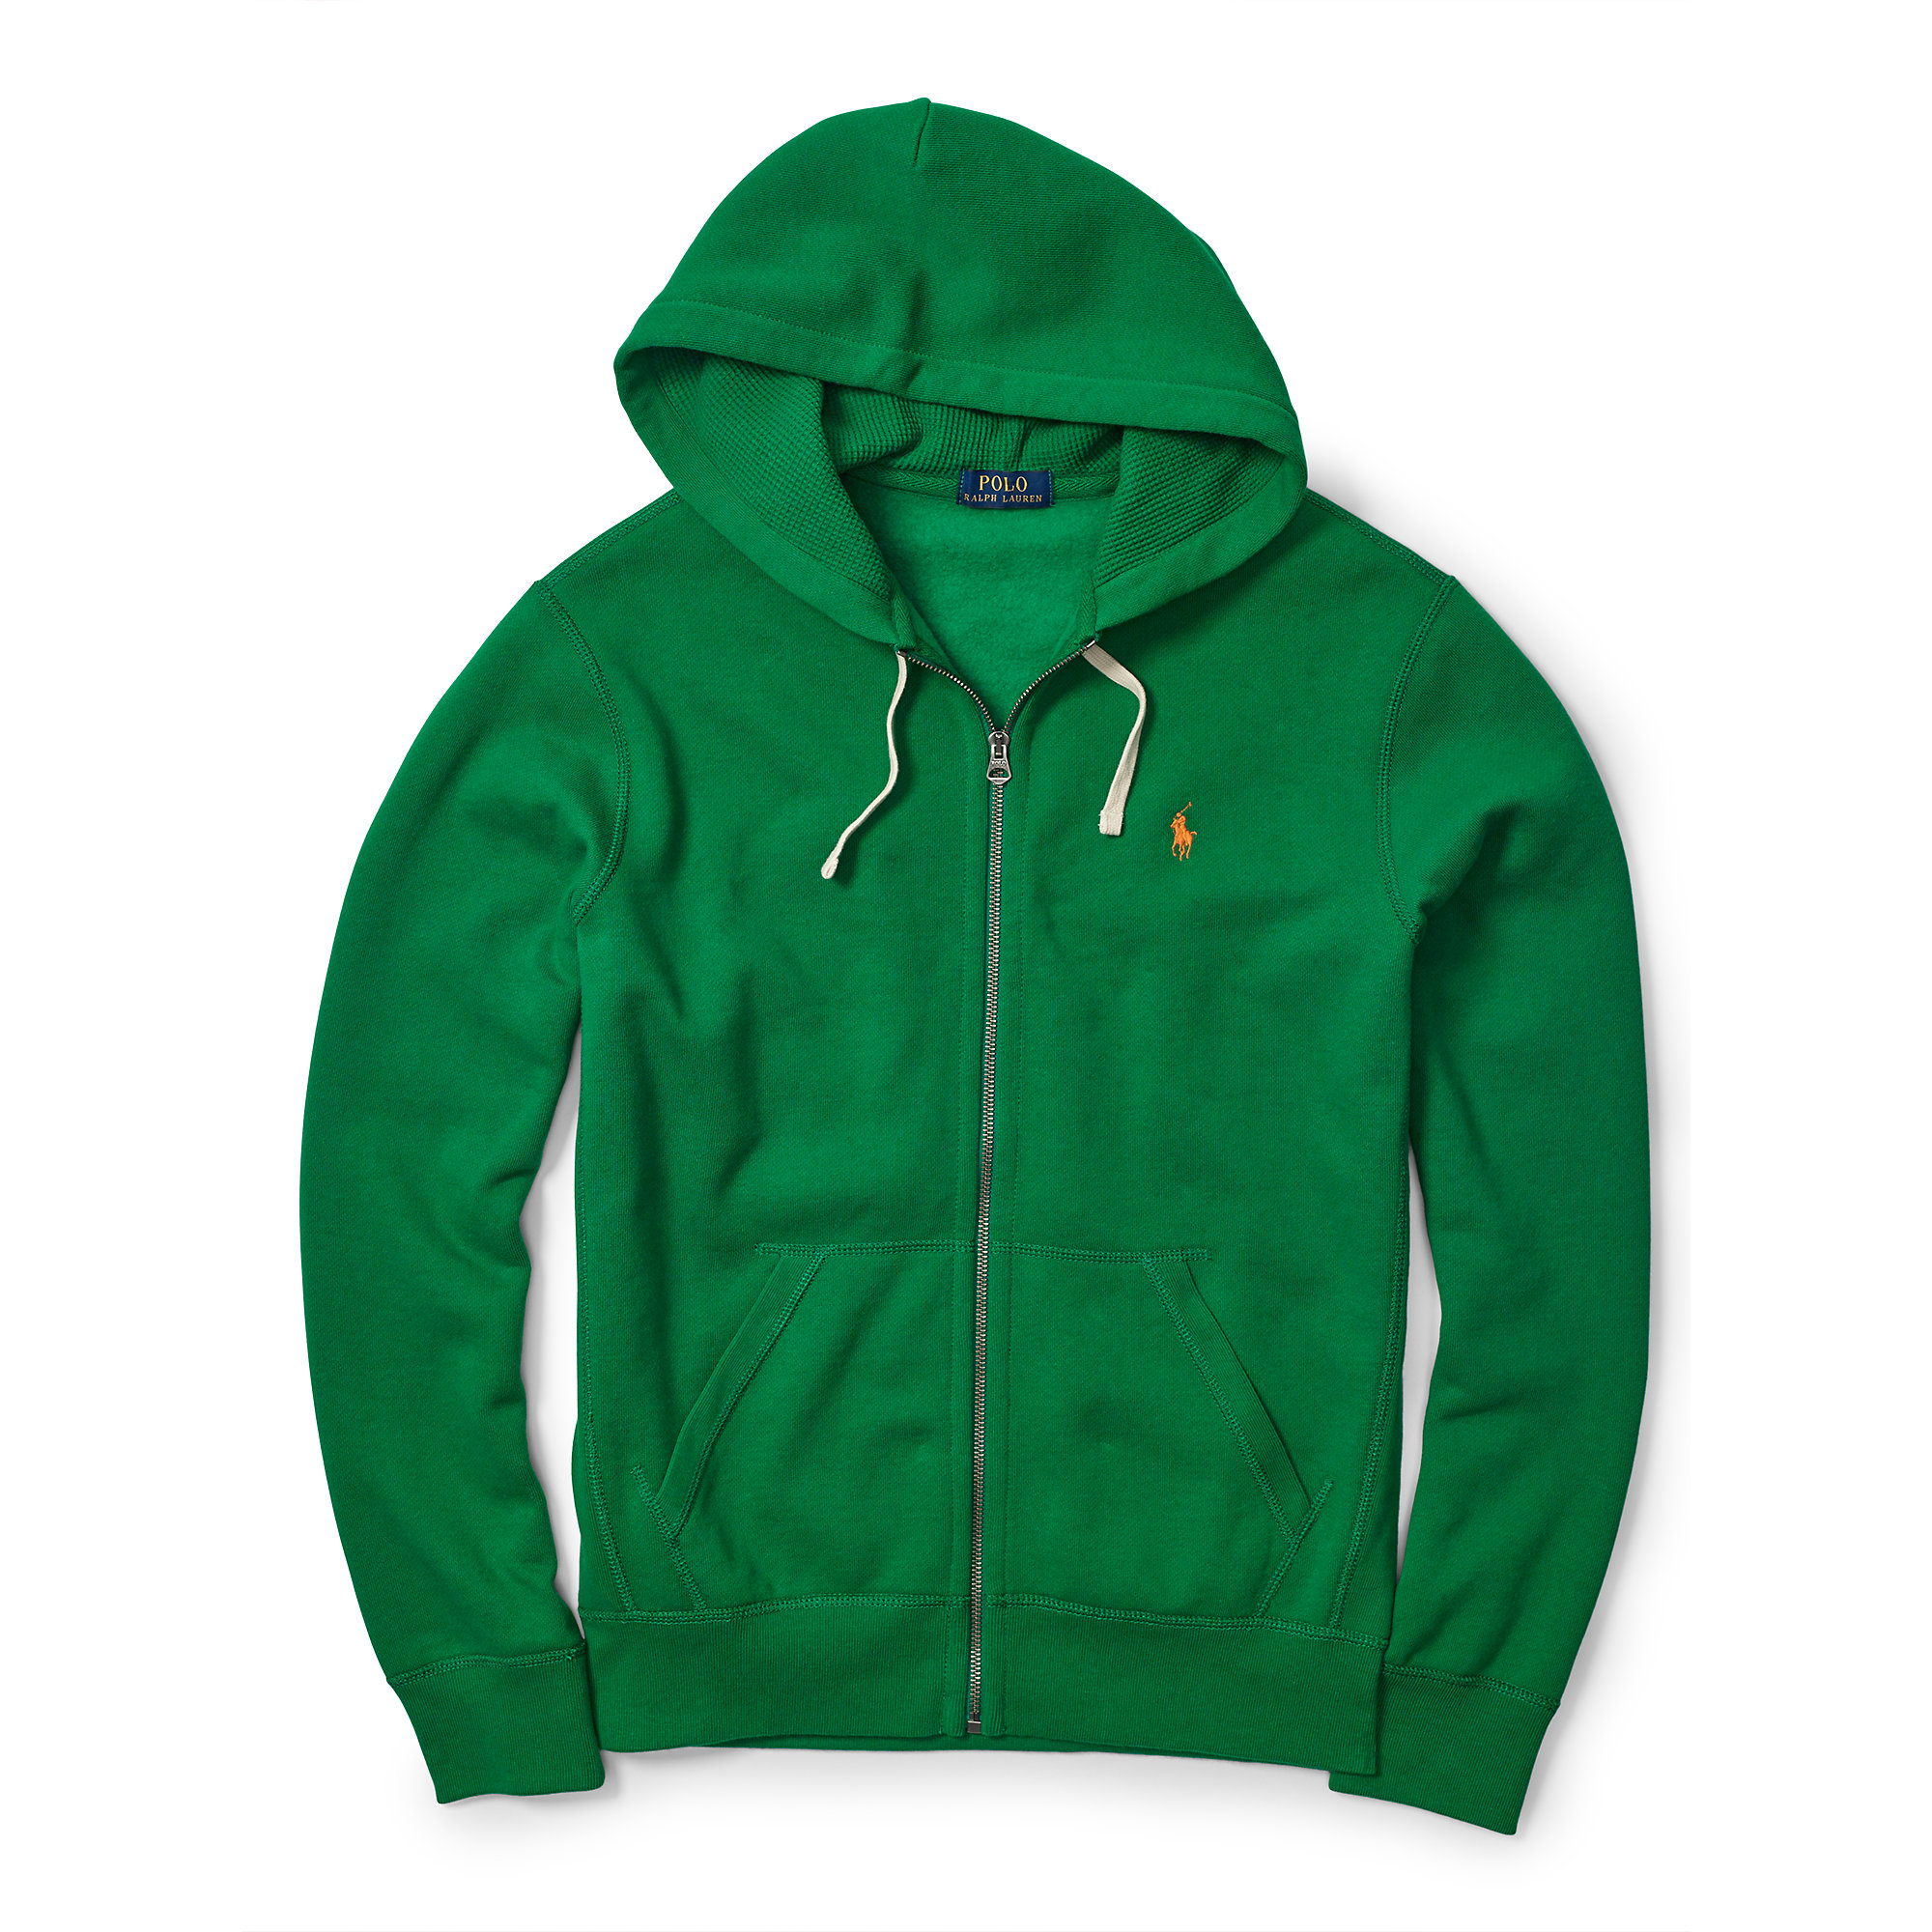 Polo Ralph Lauren Fleece Full-zip Hoodie in Green for Men - Lyst